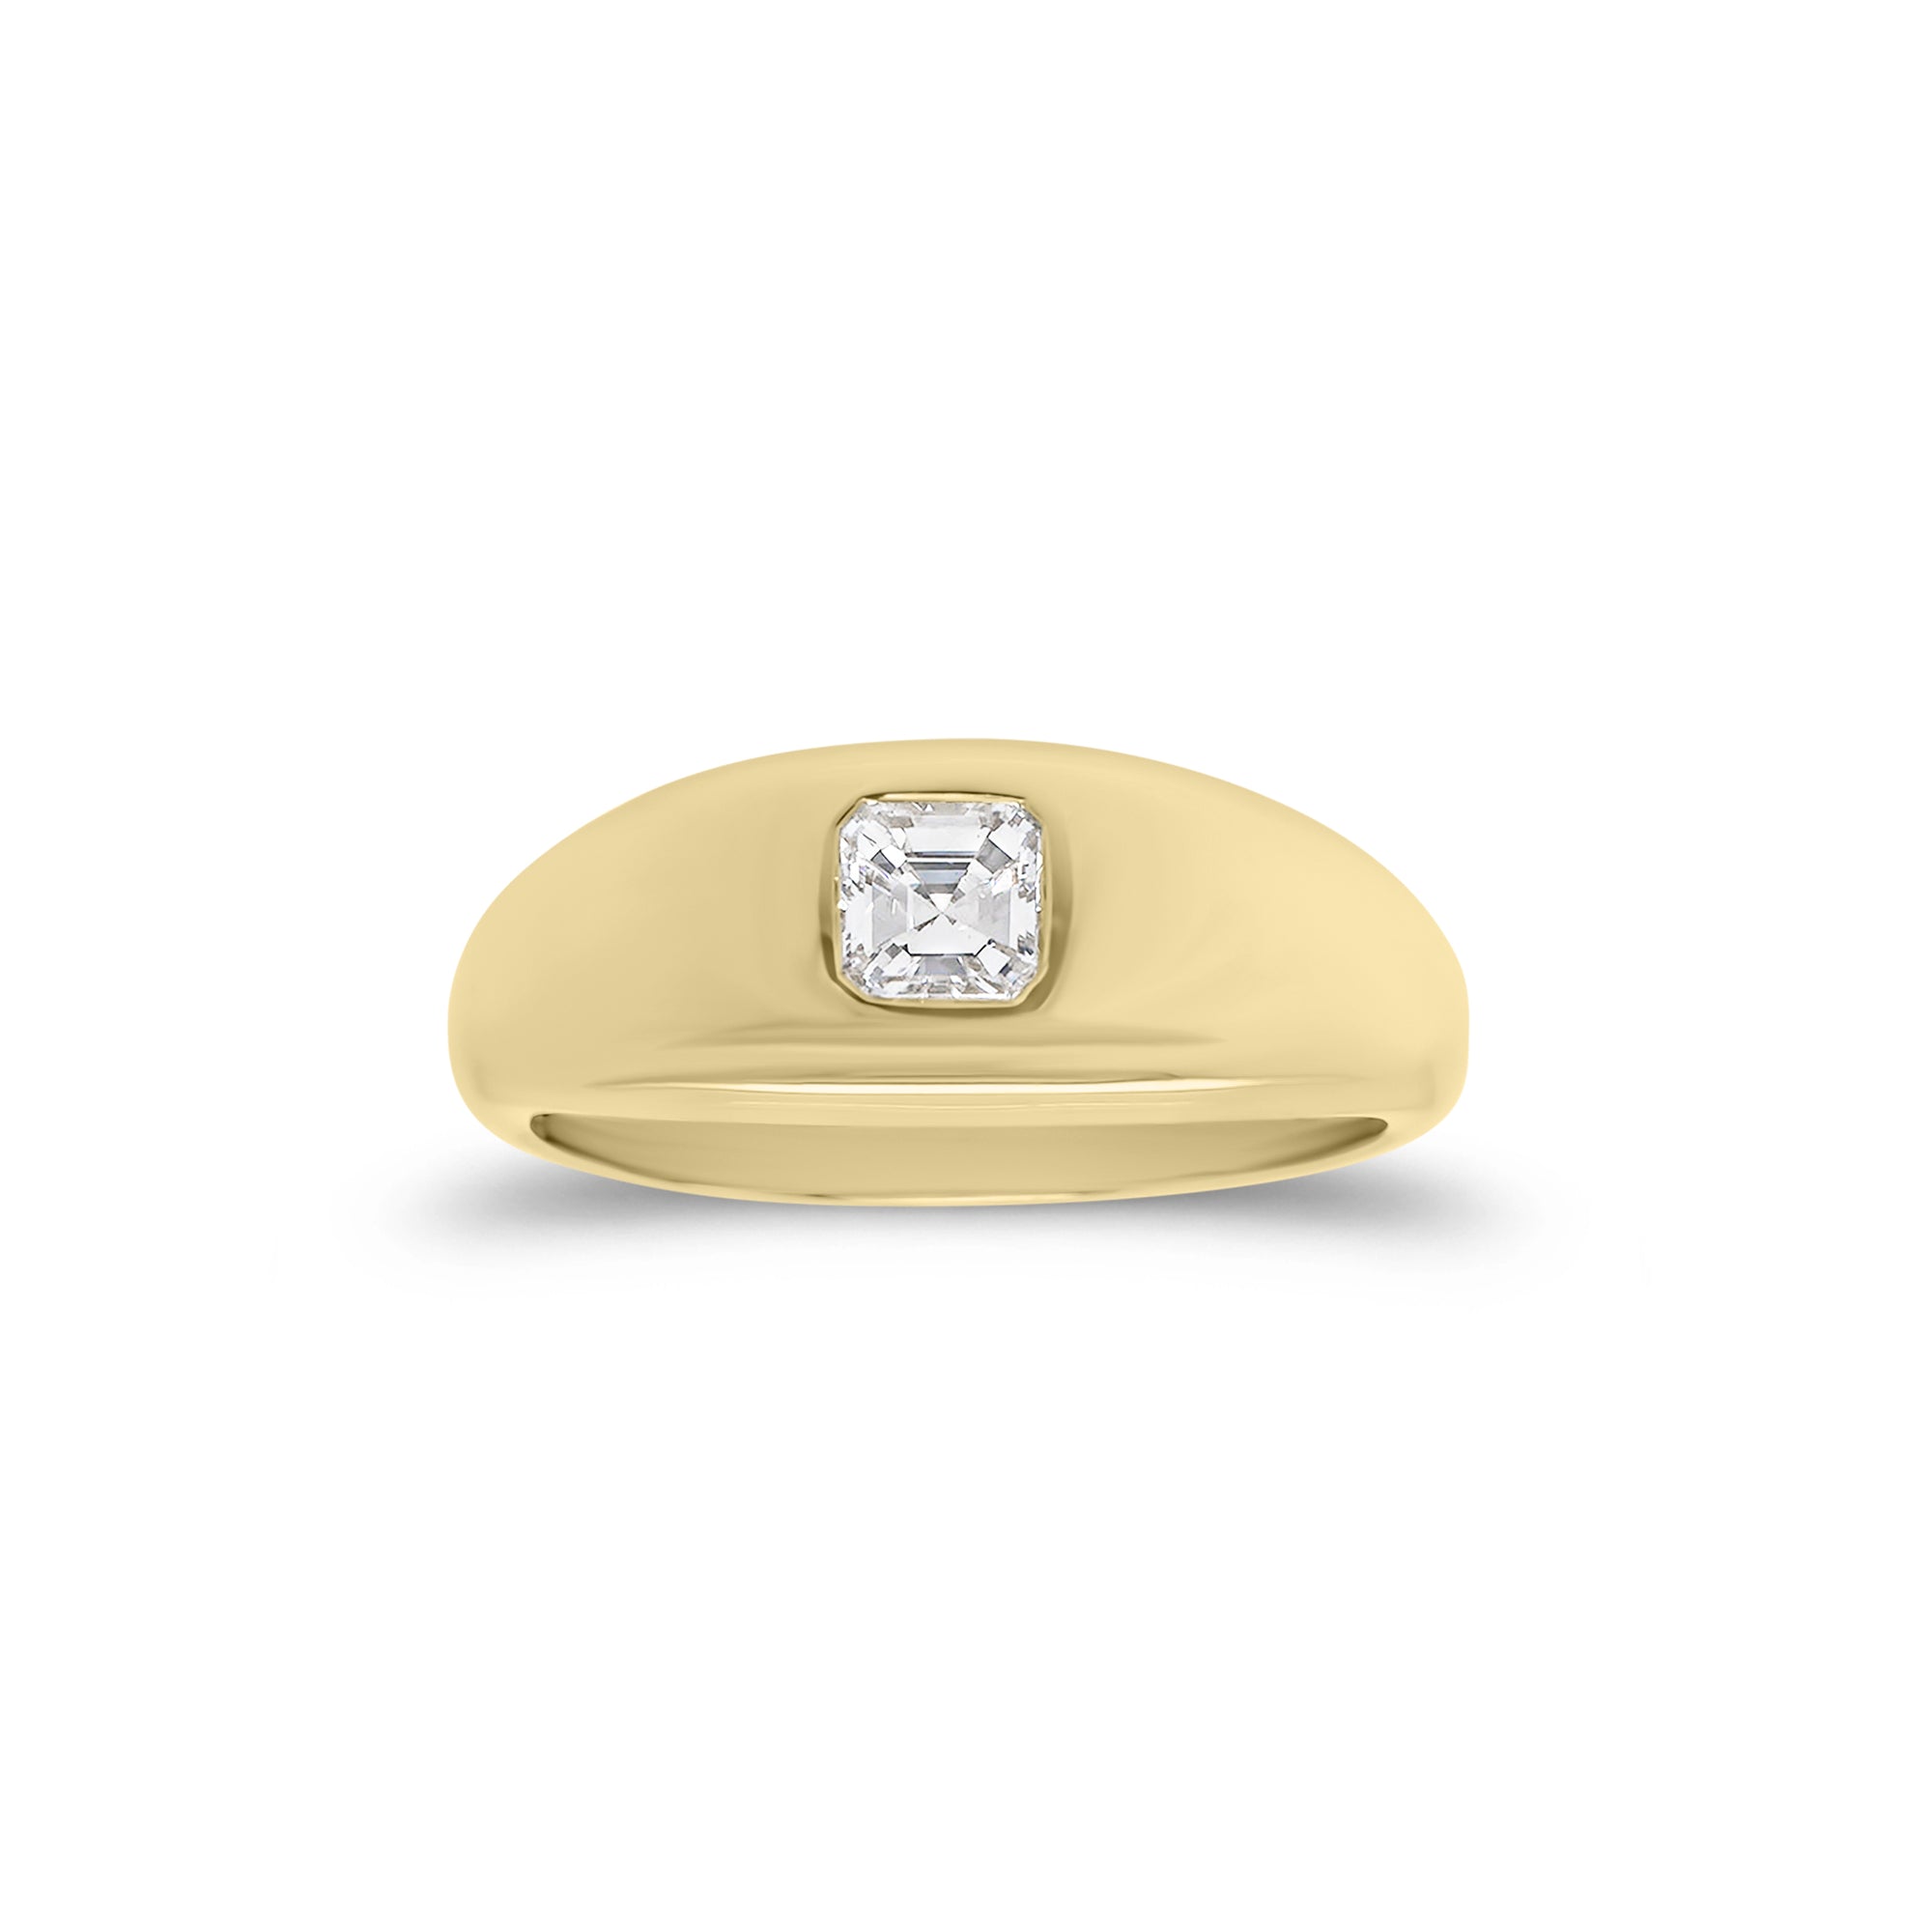 Asscher Cut Diamond Dome Ring - 14K gold weighing 4.09 grams  - 0.35 ct Asscher cut diamond